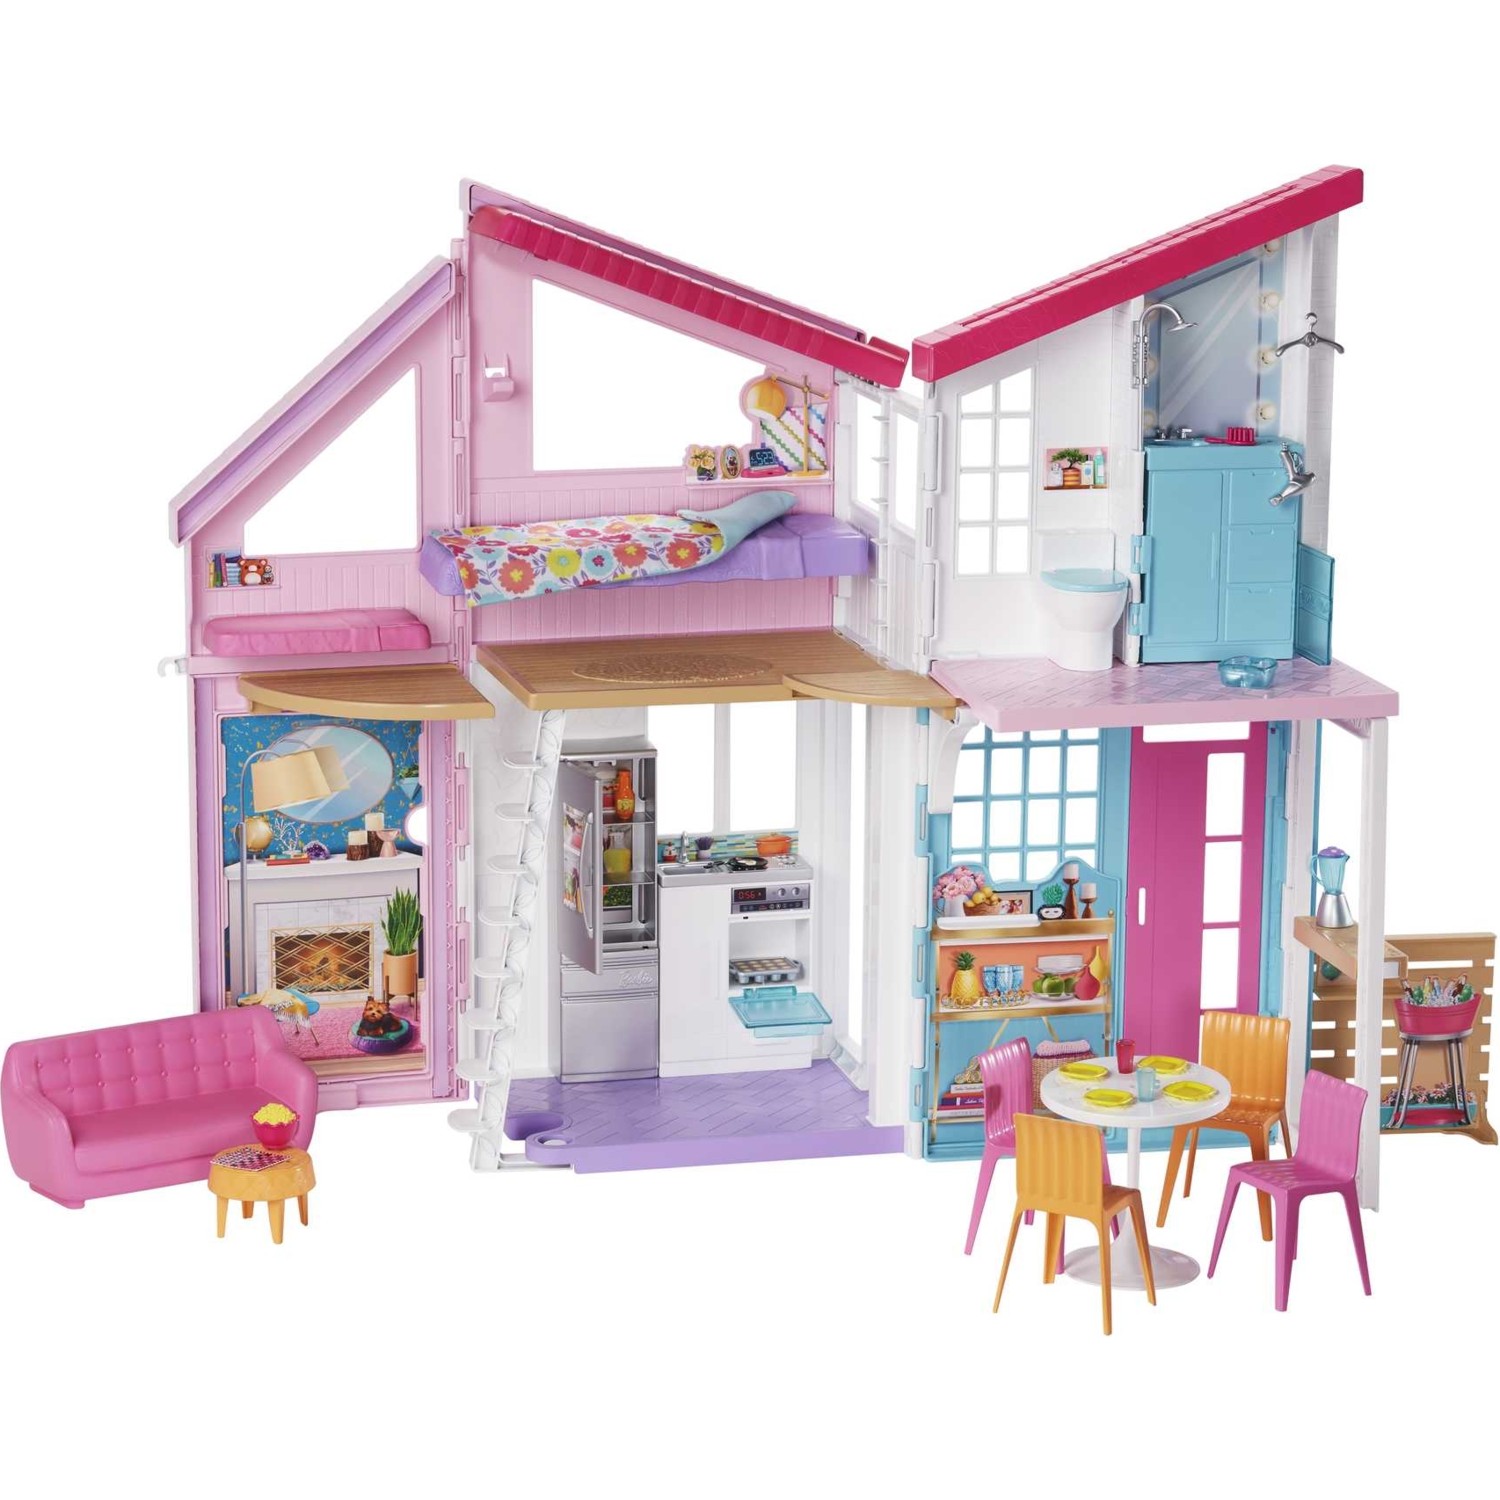 Дом Barbie FXG57 1 12 миниатюрный кукольный домик сказочный сад декор кукольный домик миниатюрная деревянная ступенчатая лестница